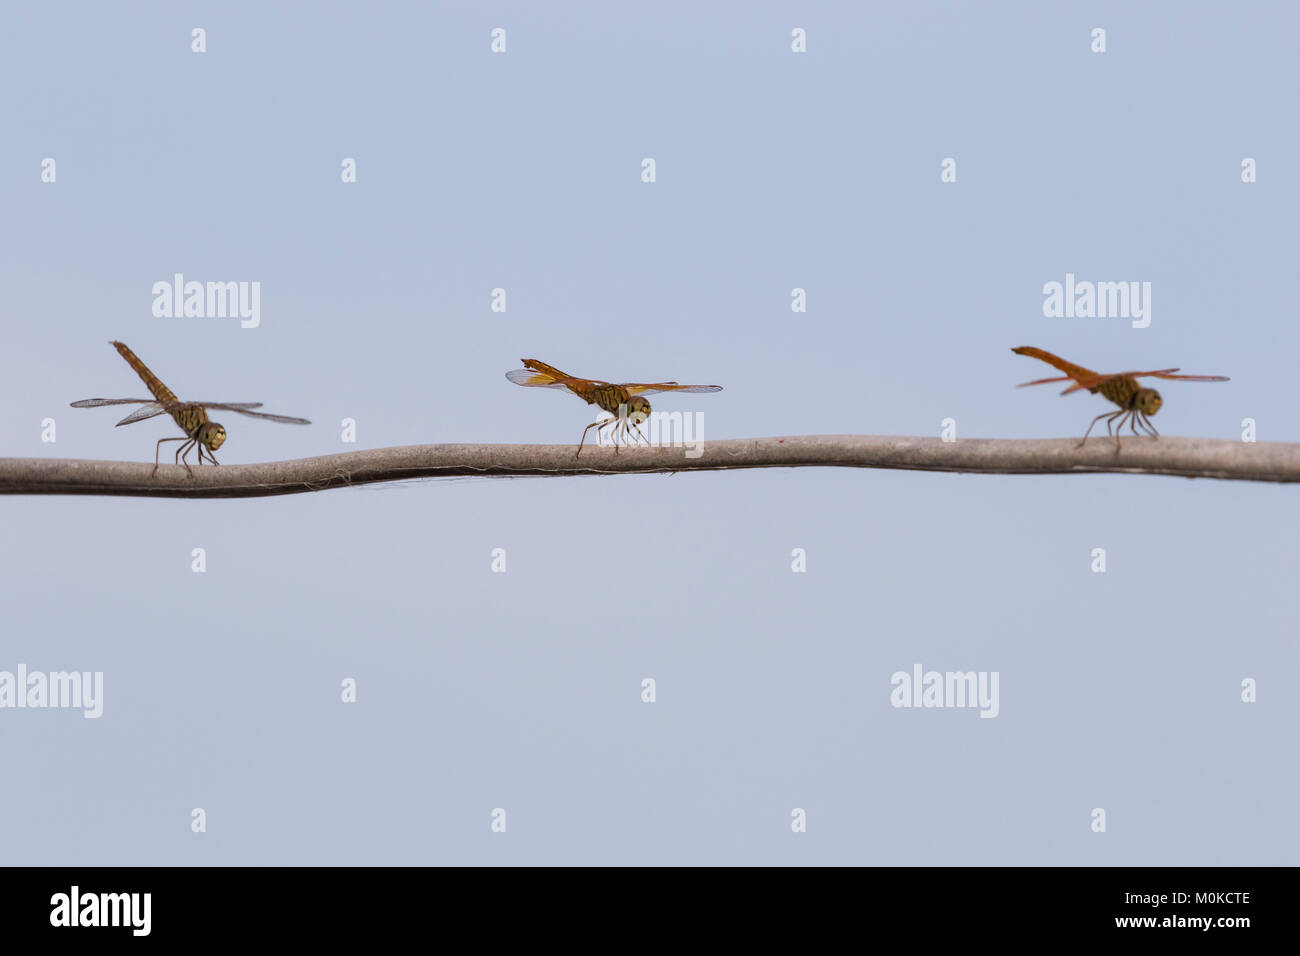 Trois libellules reposant sur une branche d'arbre, Tonle Sap, Siem Reap, Cambodge Banque D'Images